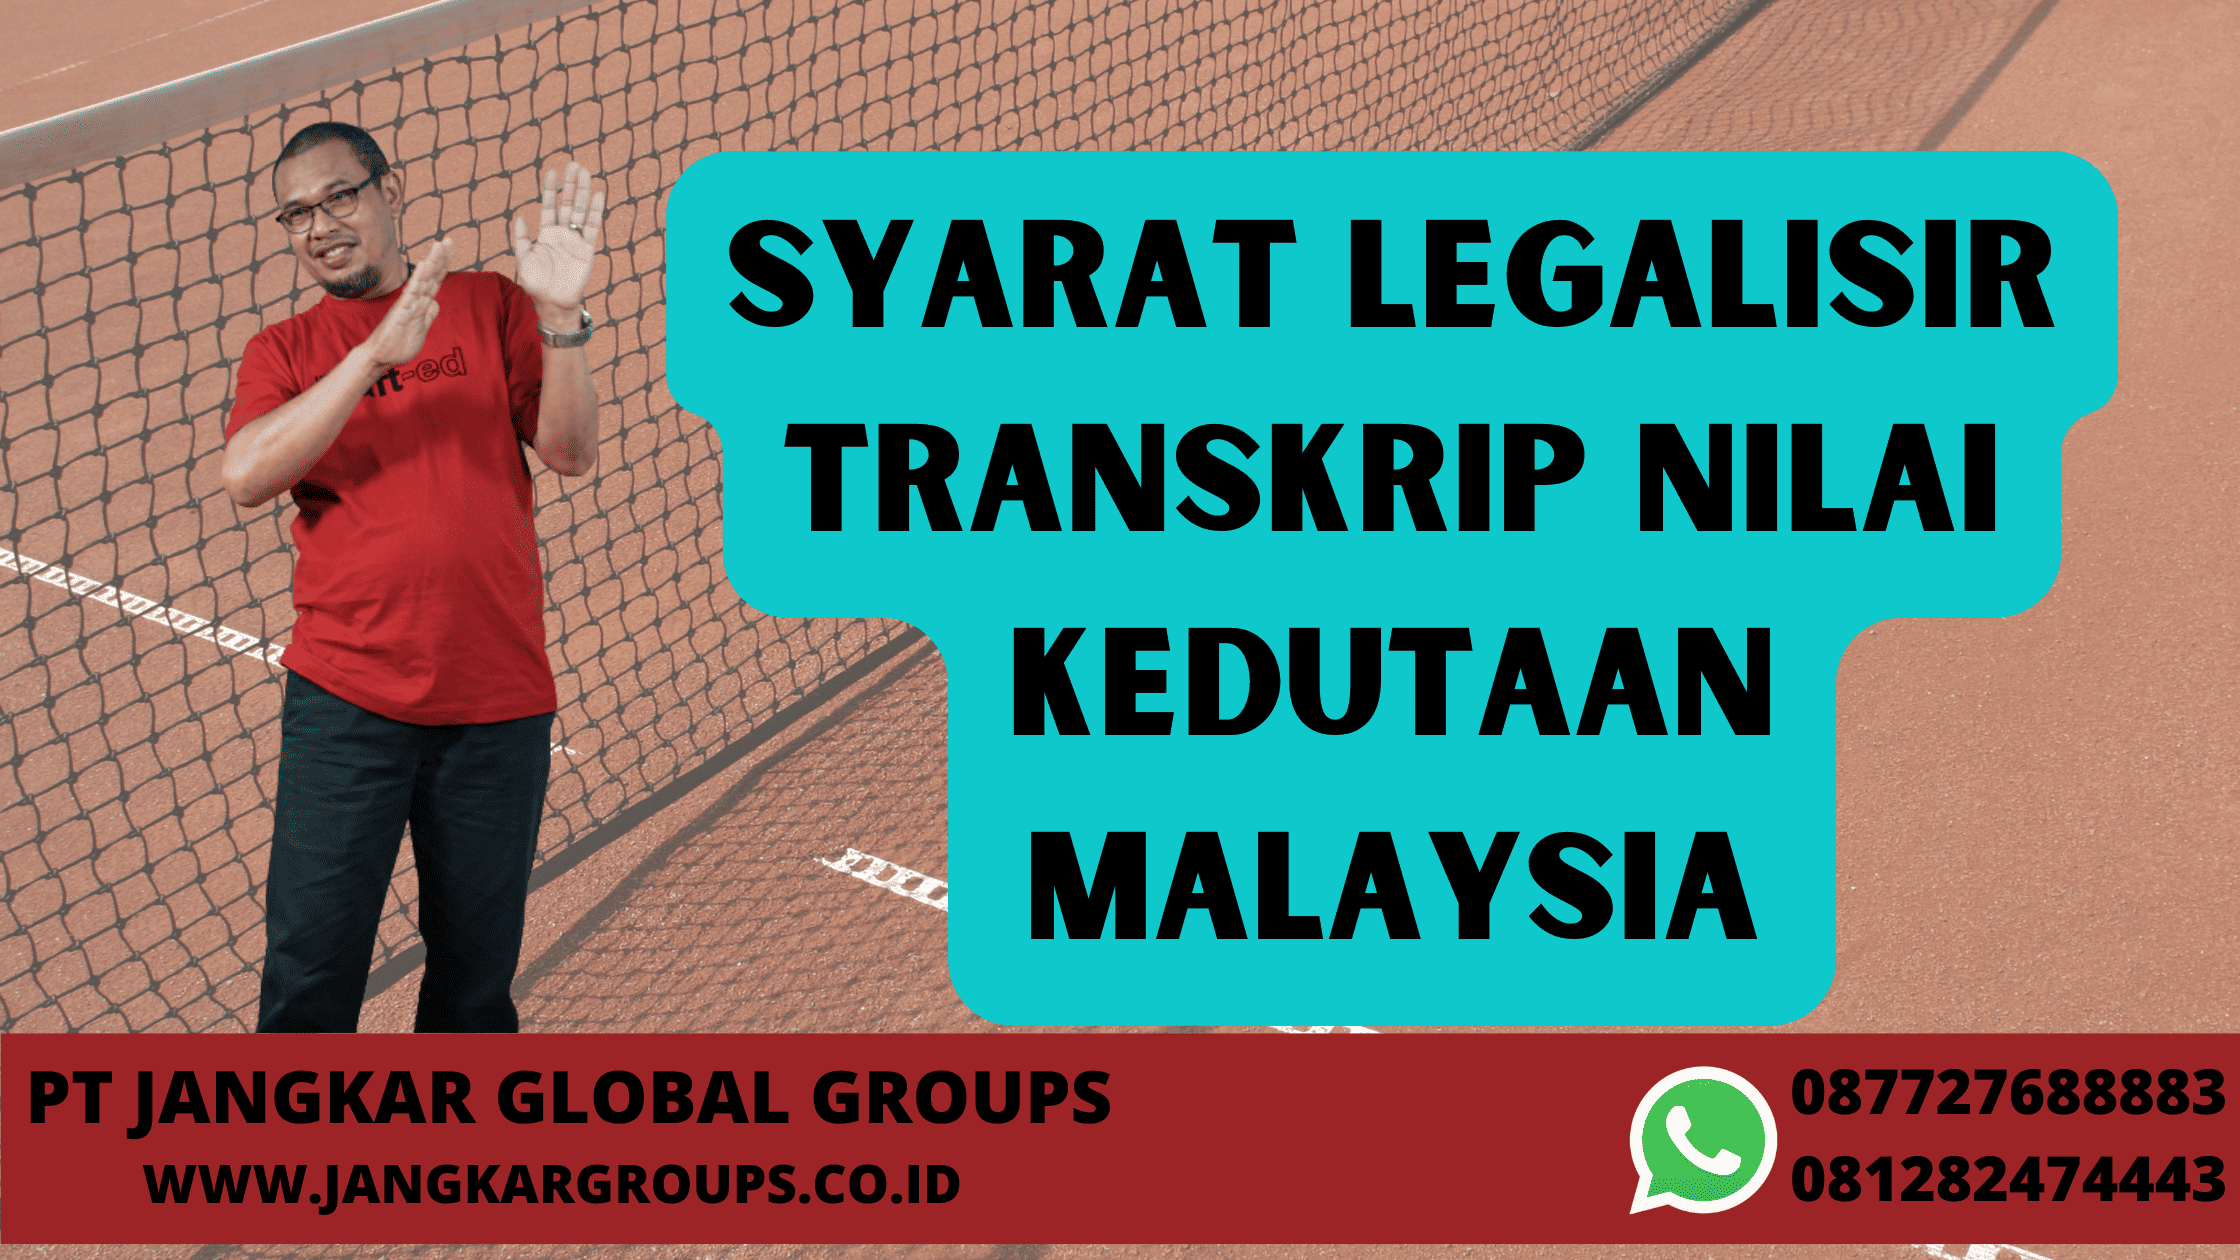 Syarat Legalisir Transkrip Nilai Kedutaan Malaysia